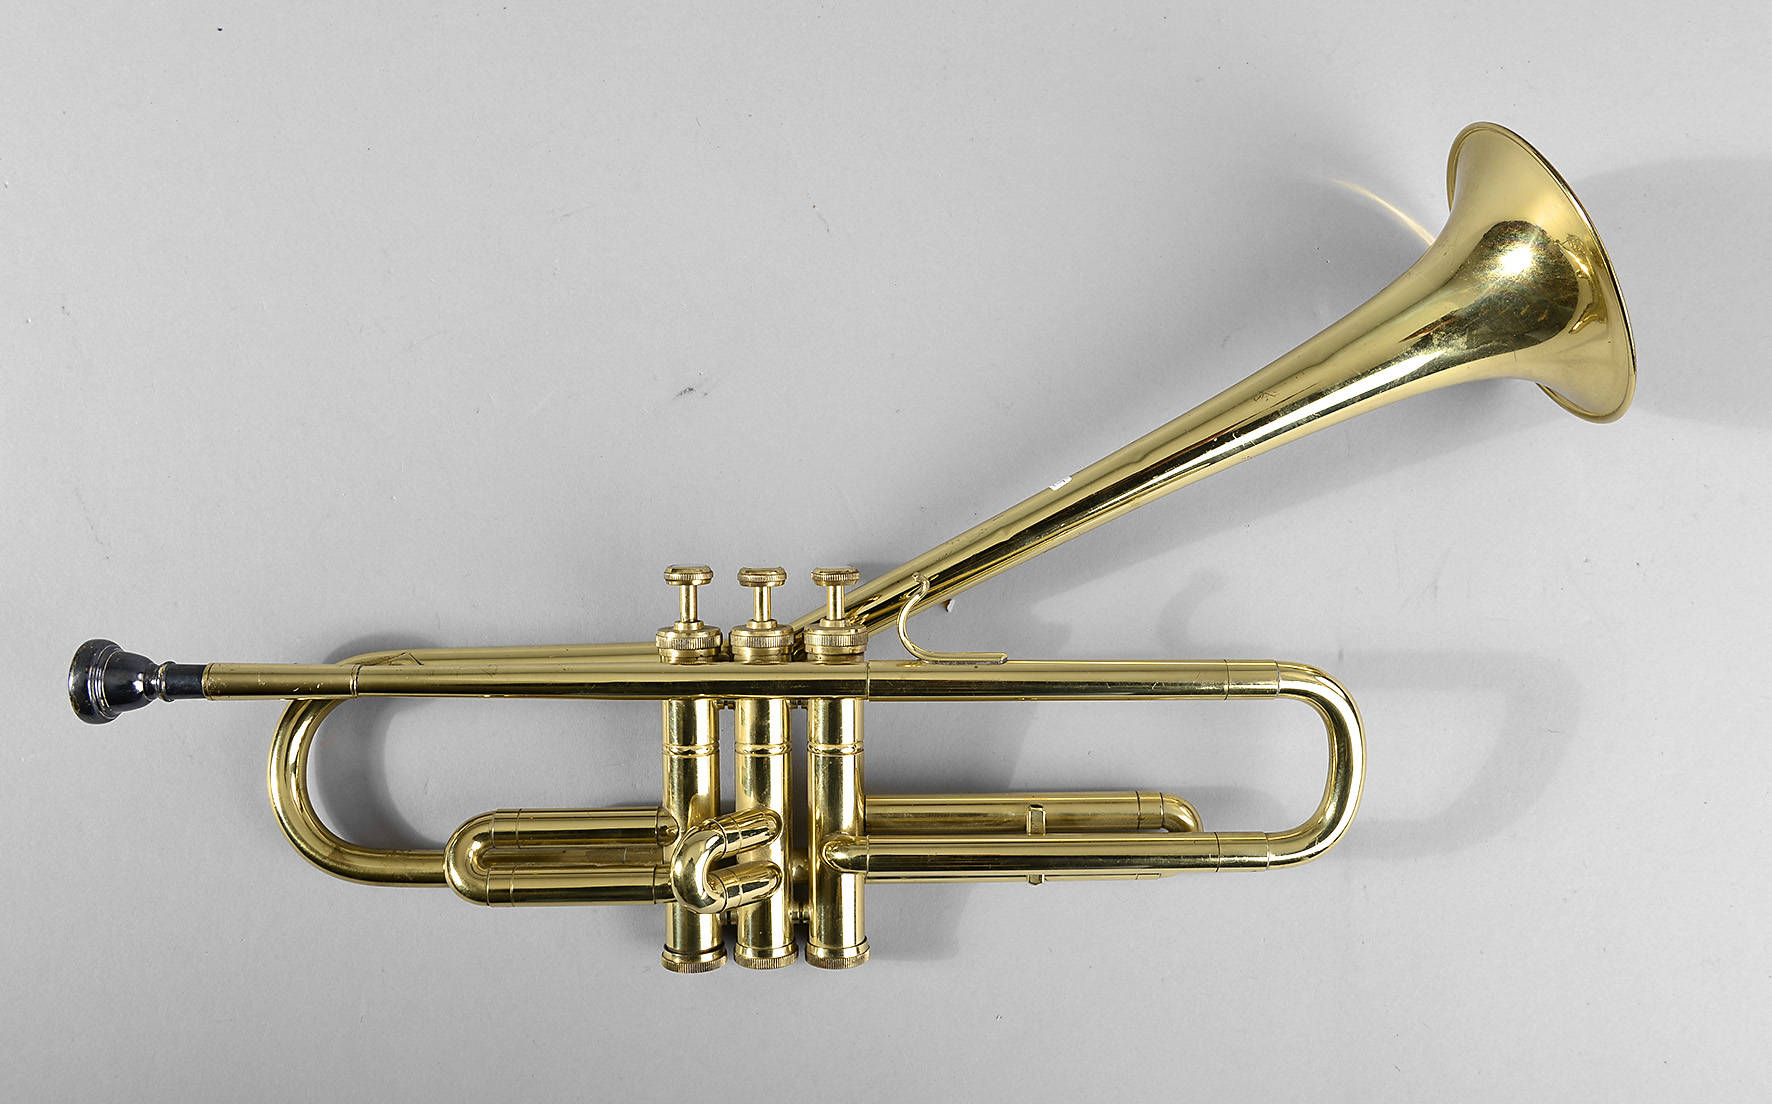 Jazztrompete